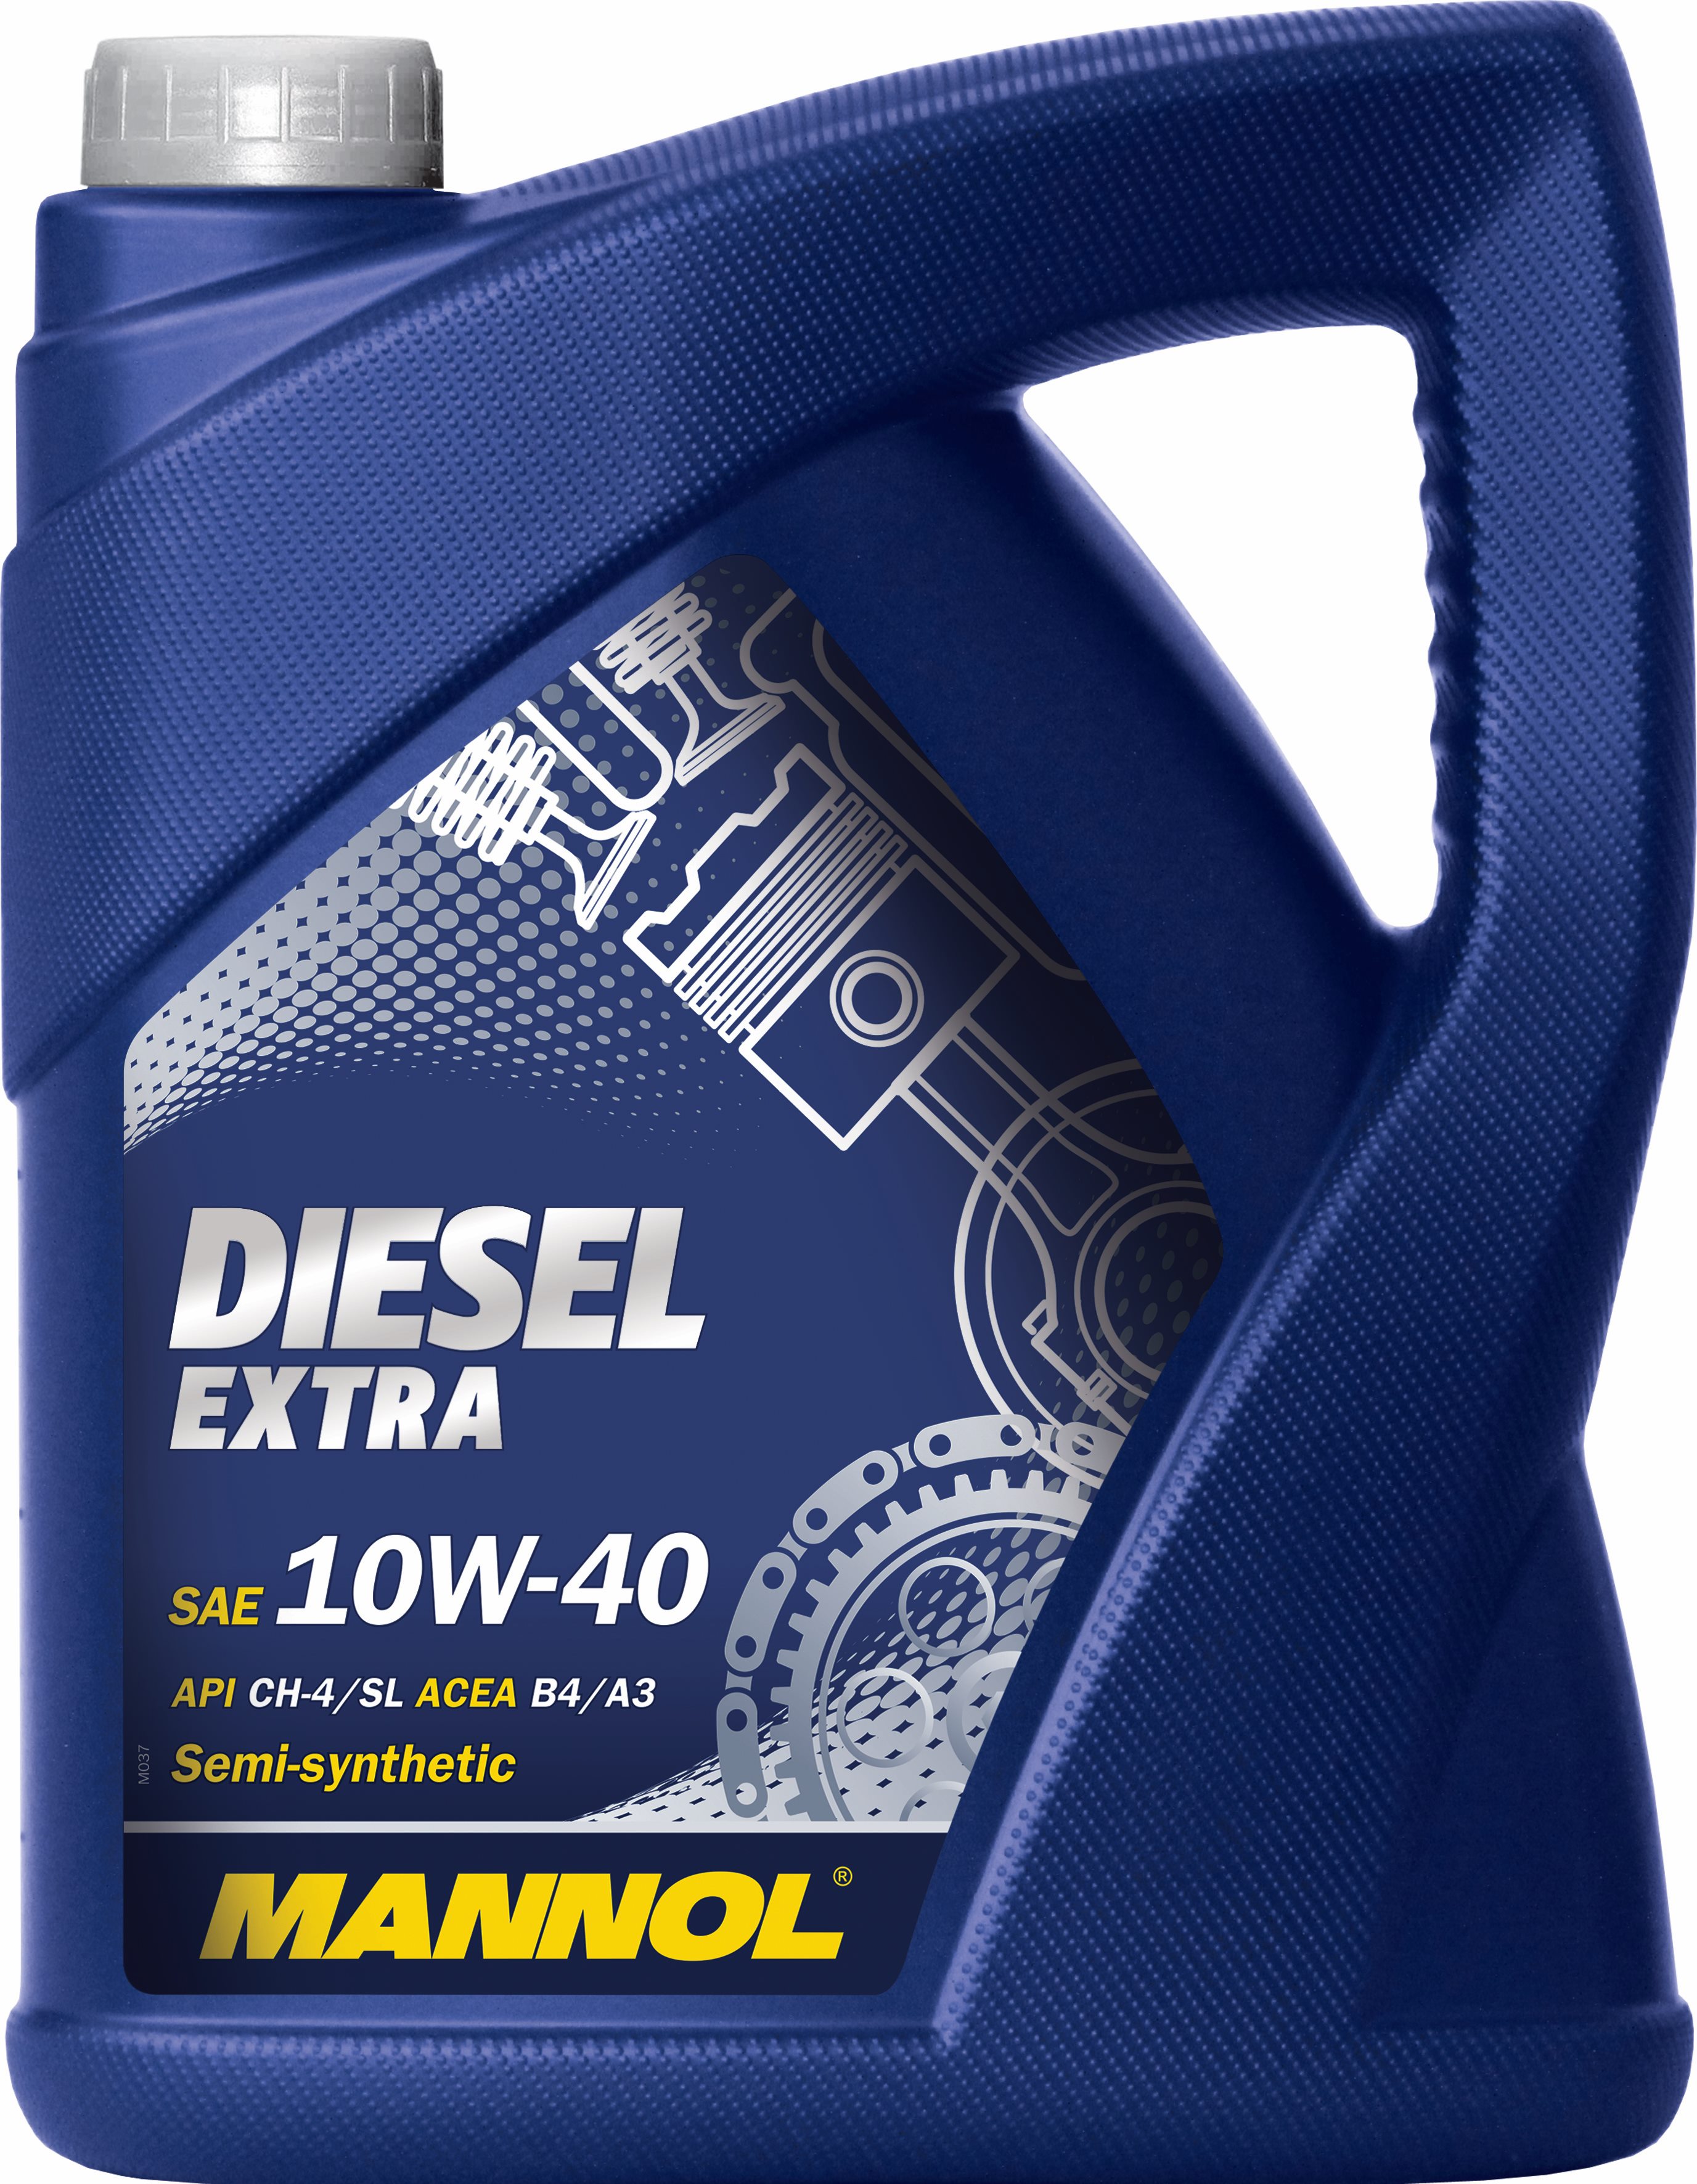 Масло моторное полусинтетическое 10w-40 diesel extra 5л - Mannol 1106